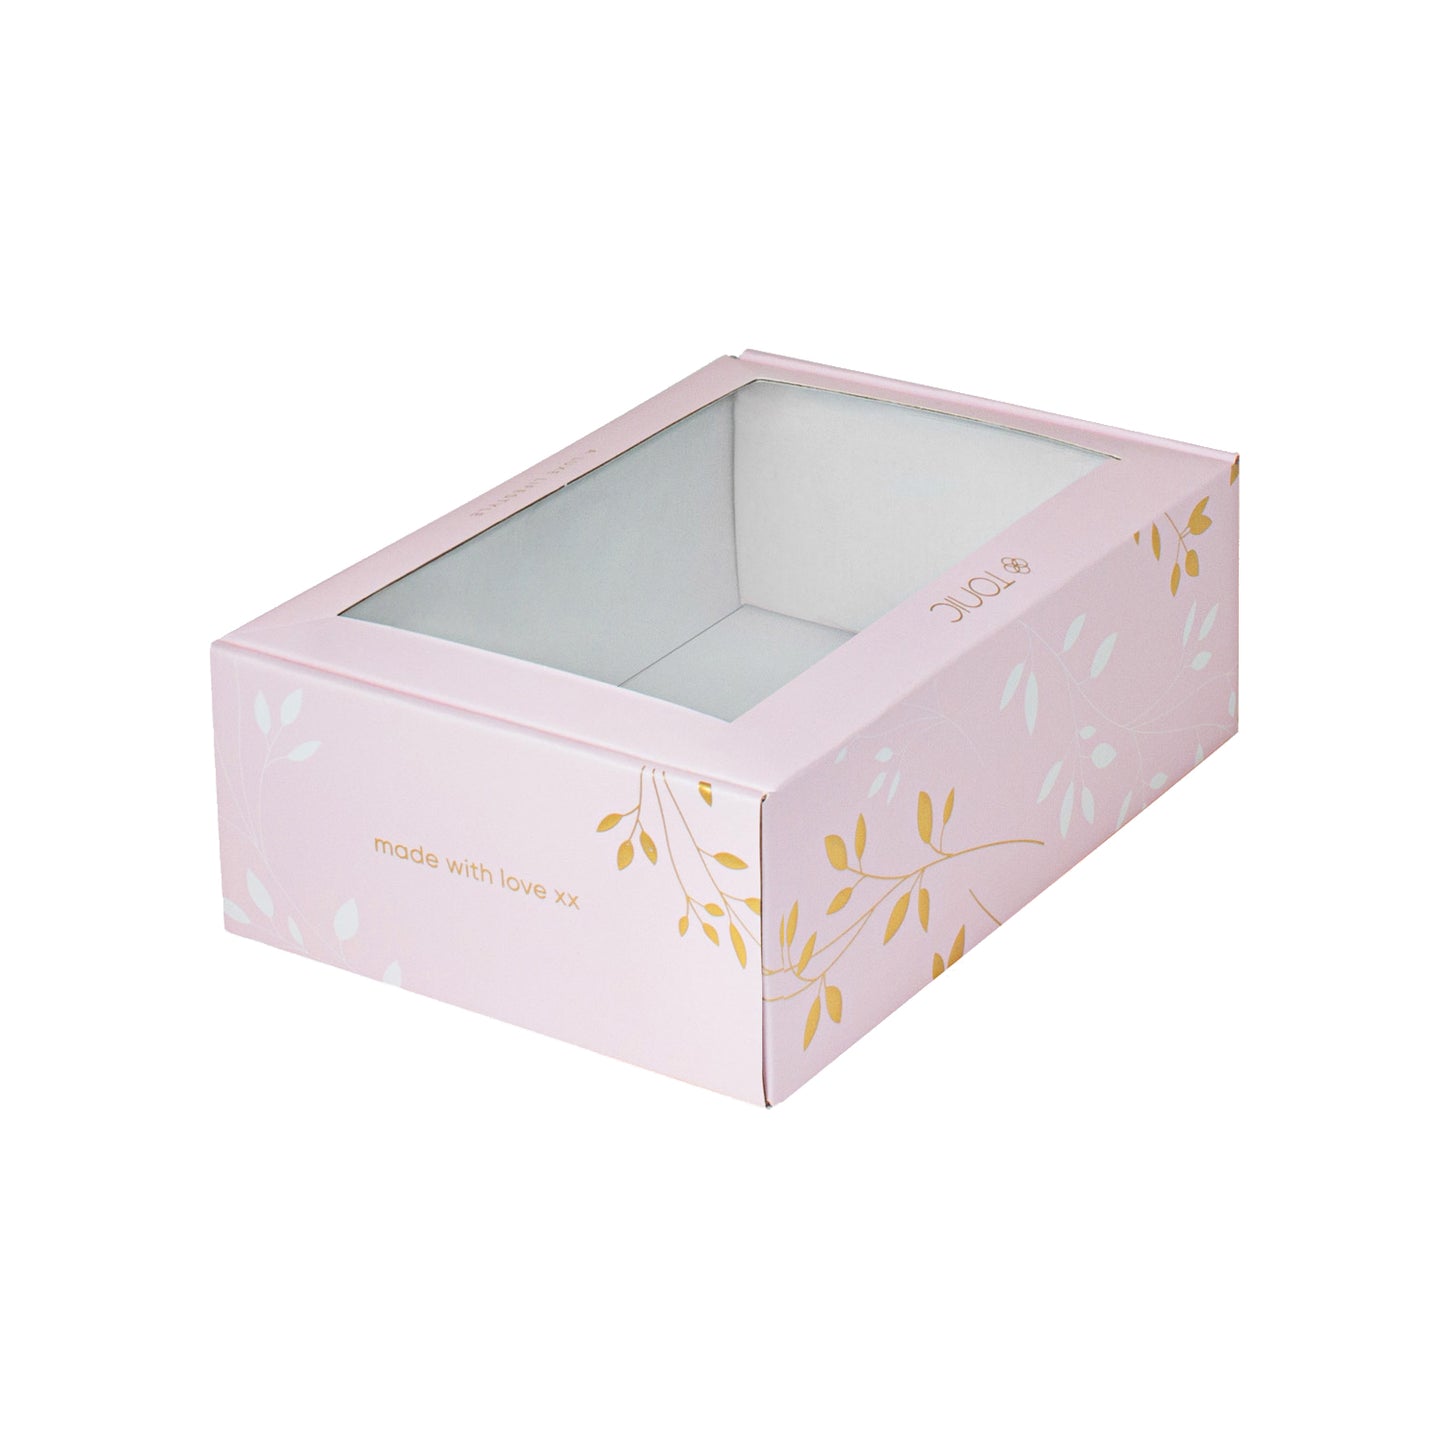 Tonic Pink Gift Box